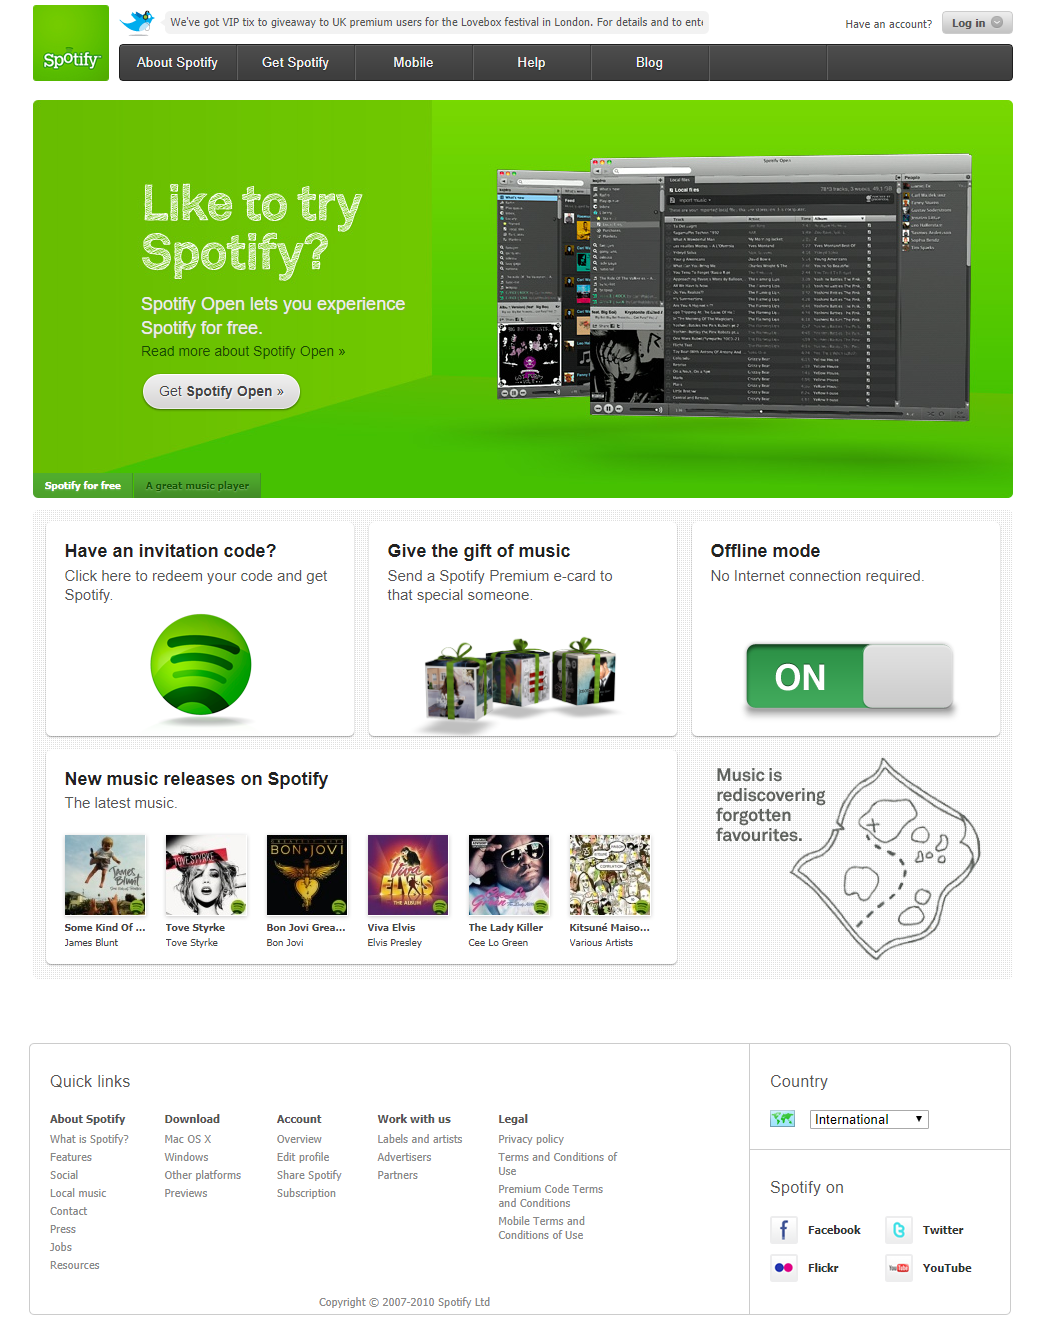 Spotify website in 2011